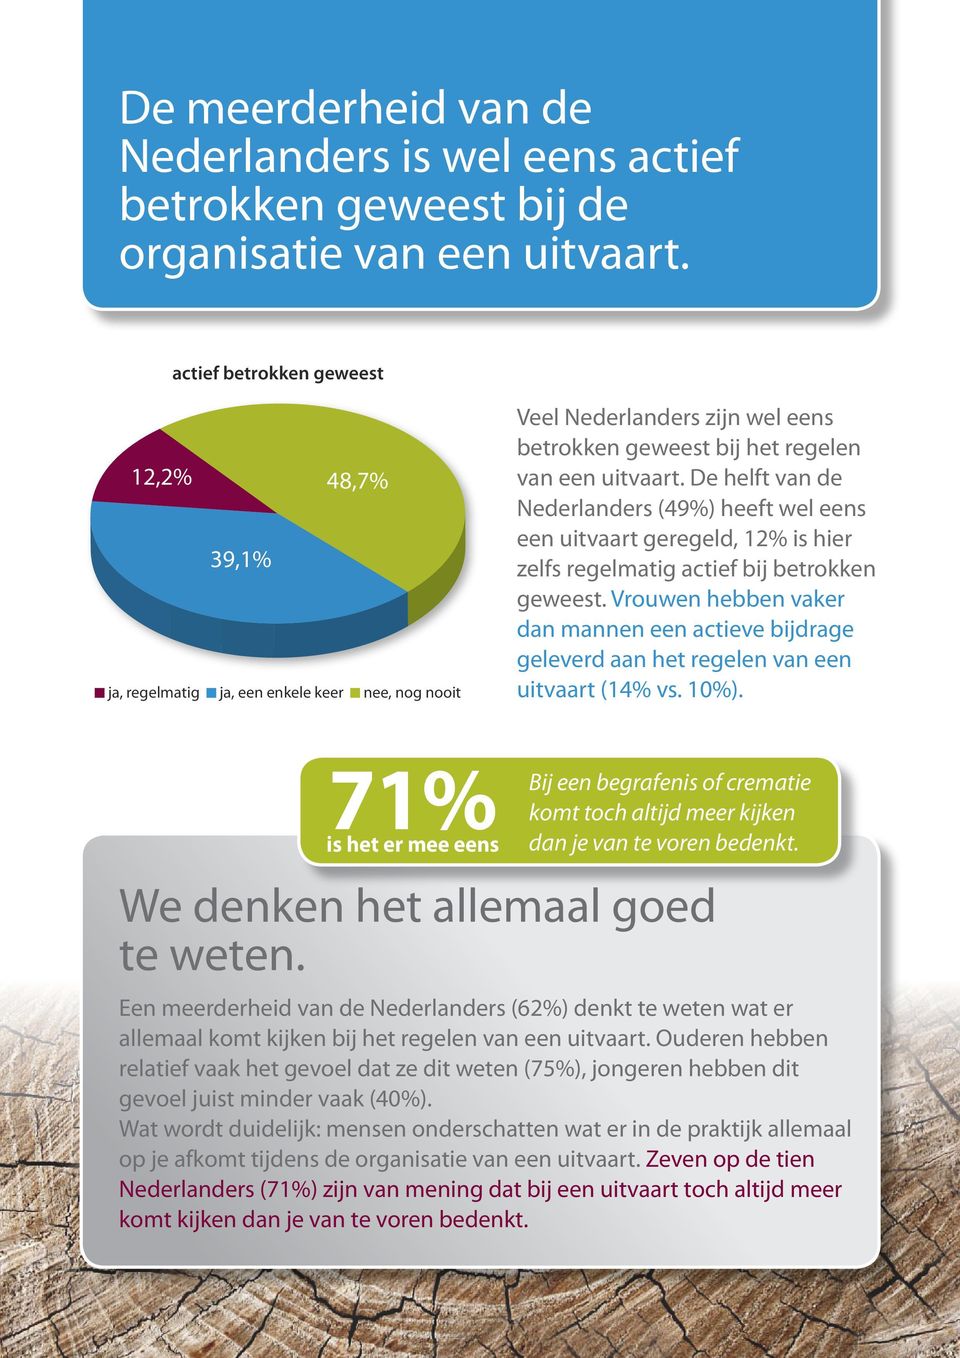 De helft van de Nederlanders (49%) heeft wel eens een uitvaart geregeld, 12% is hier zelfs regelmatig actief bij betrokken geweest.